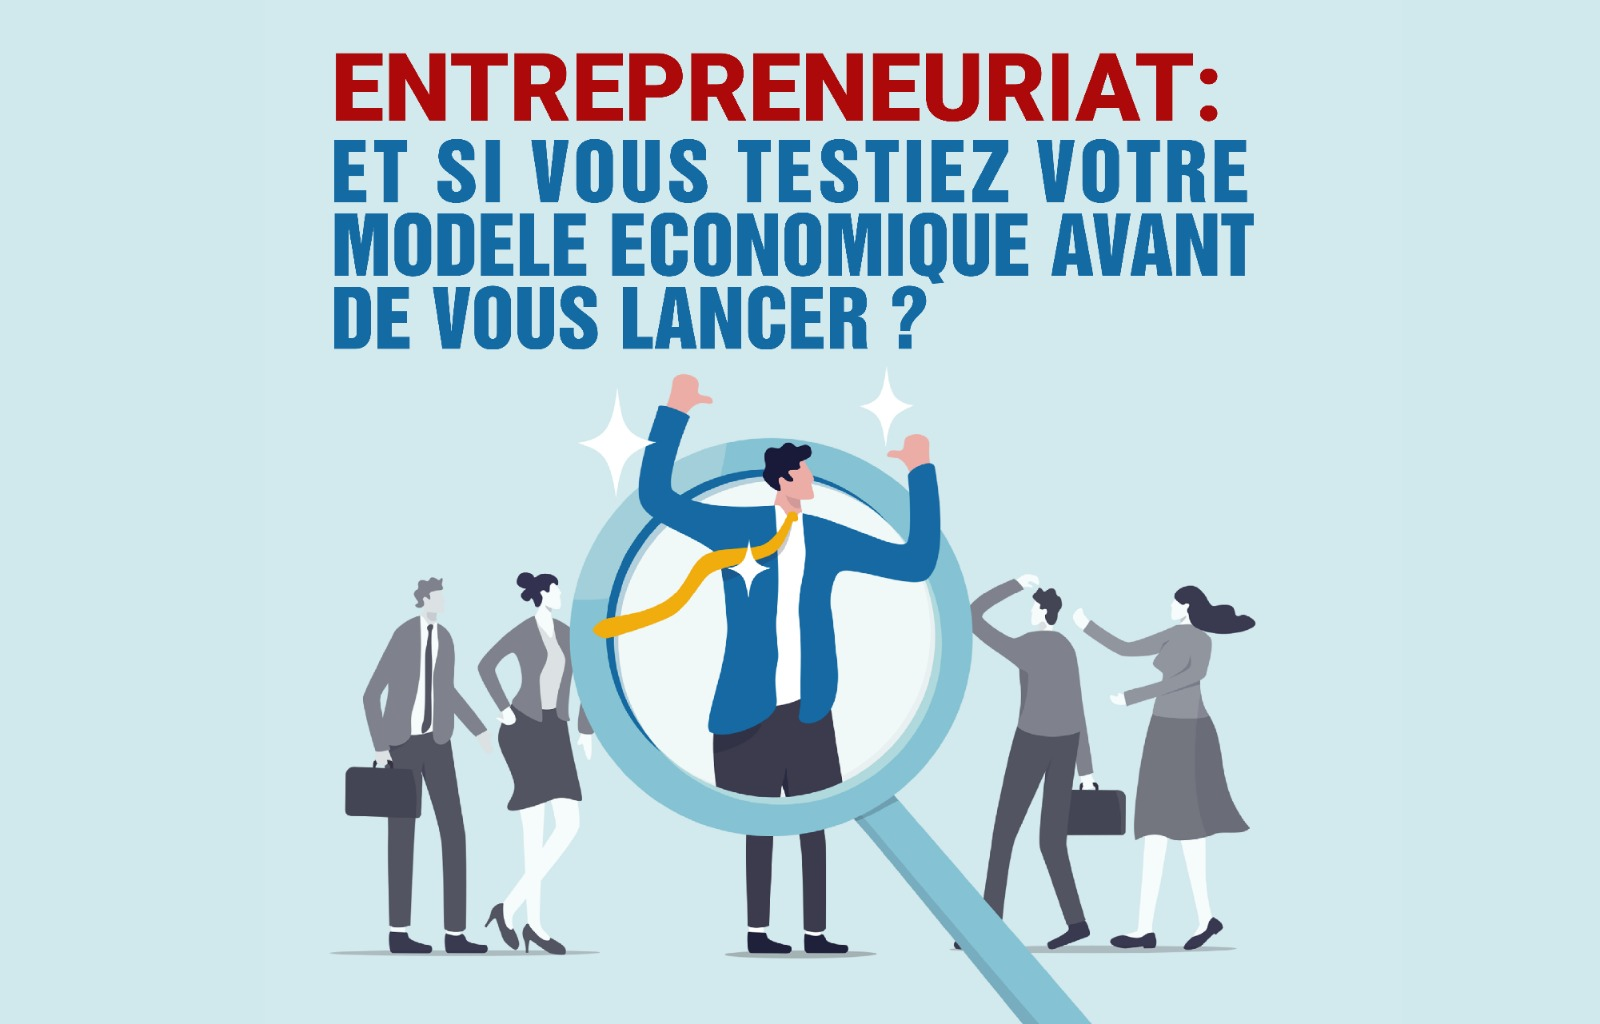 Entrepreneuriat : Et si vous testiez votre modèle économique avant de vous lancer ?